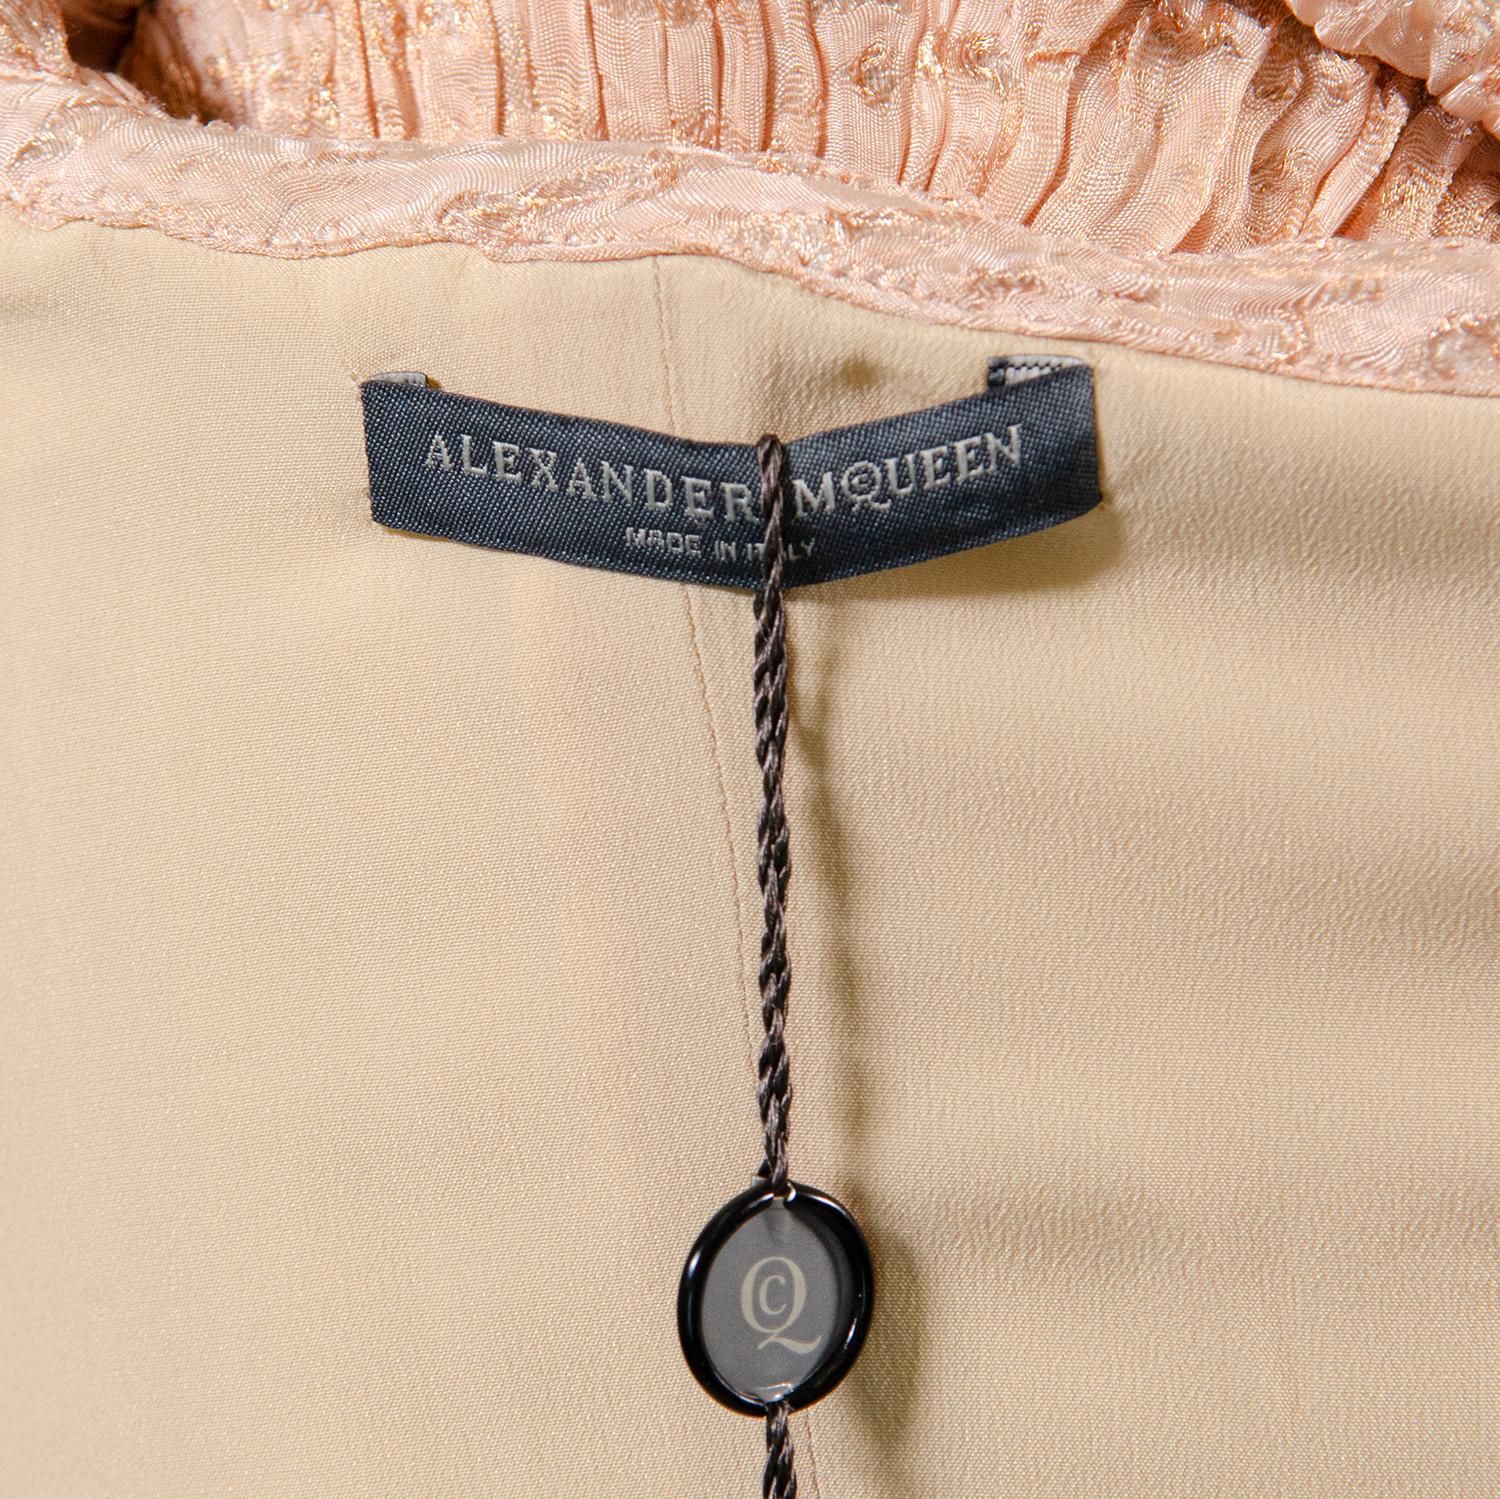 ALEXANDER MCQUEEN Rare F/W 2012 Rare Runway Silk Dress With Belt 8